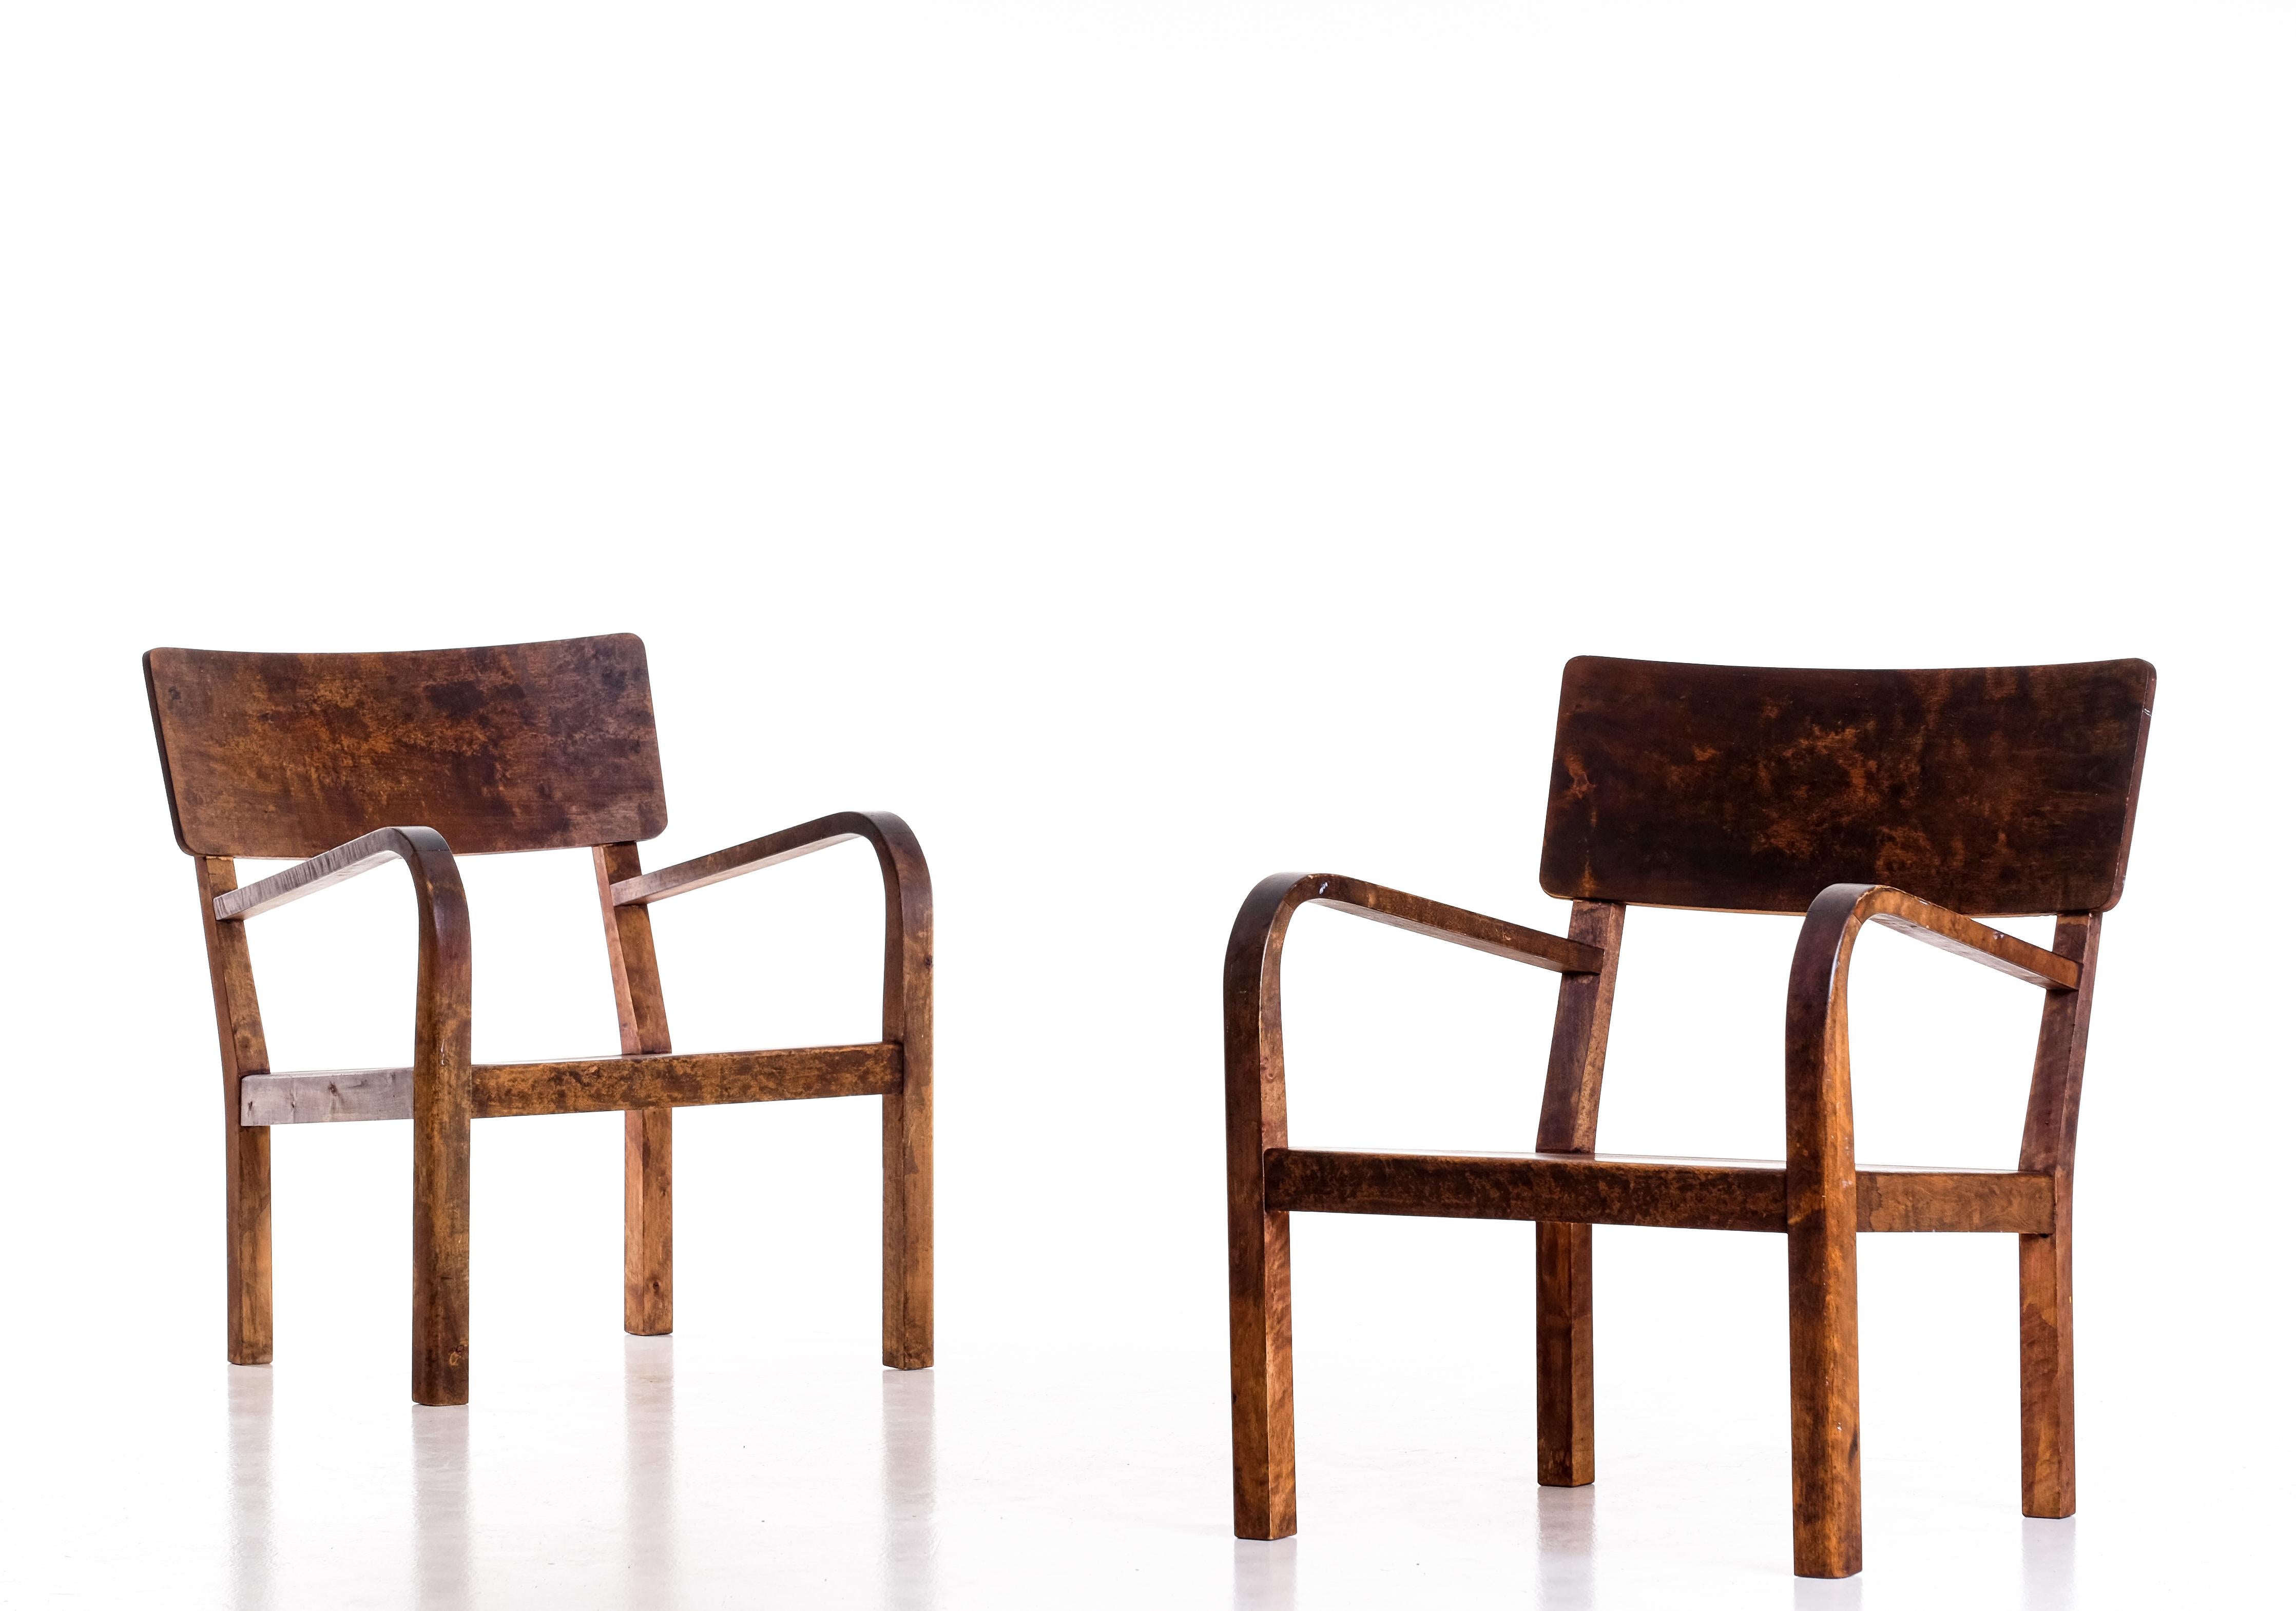 Ein Paar schwedische Sessel aus Birke, 1950er Jahre.
Guter Zustand mit kleinen Gebrauchsspuren und Patina.
  




